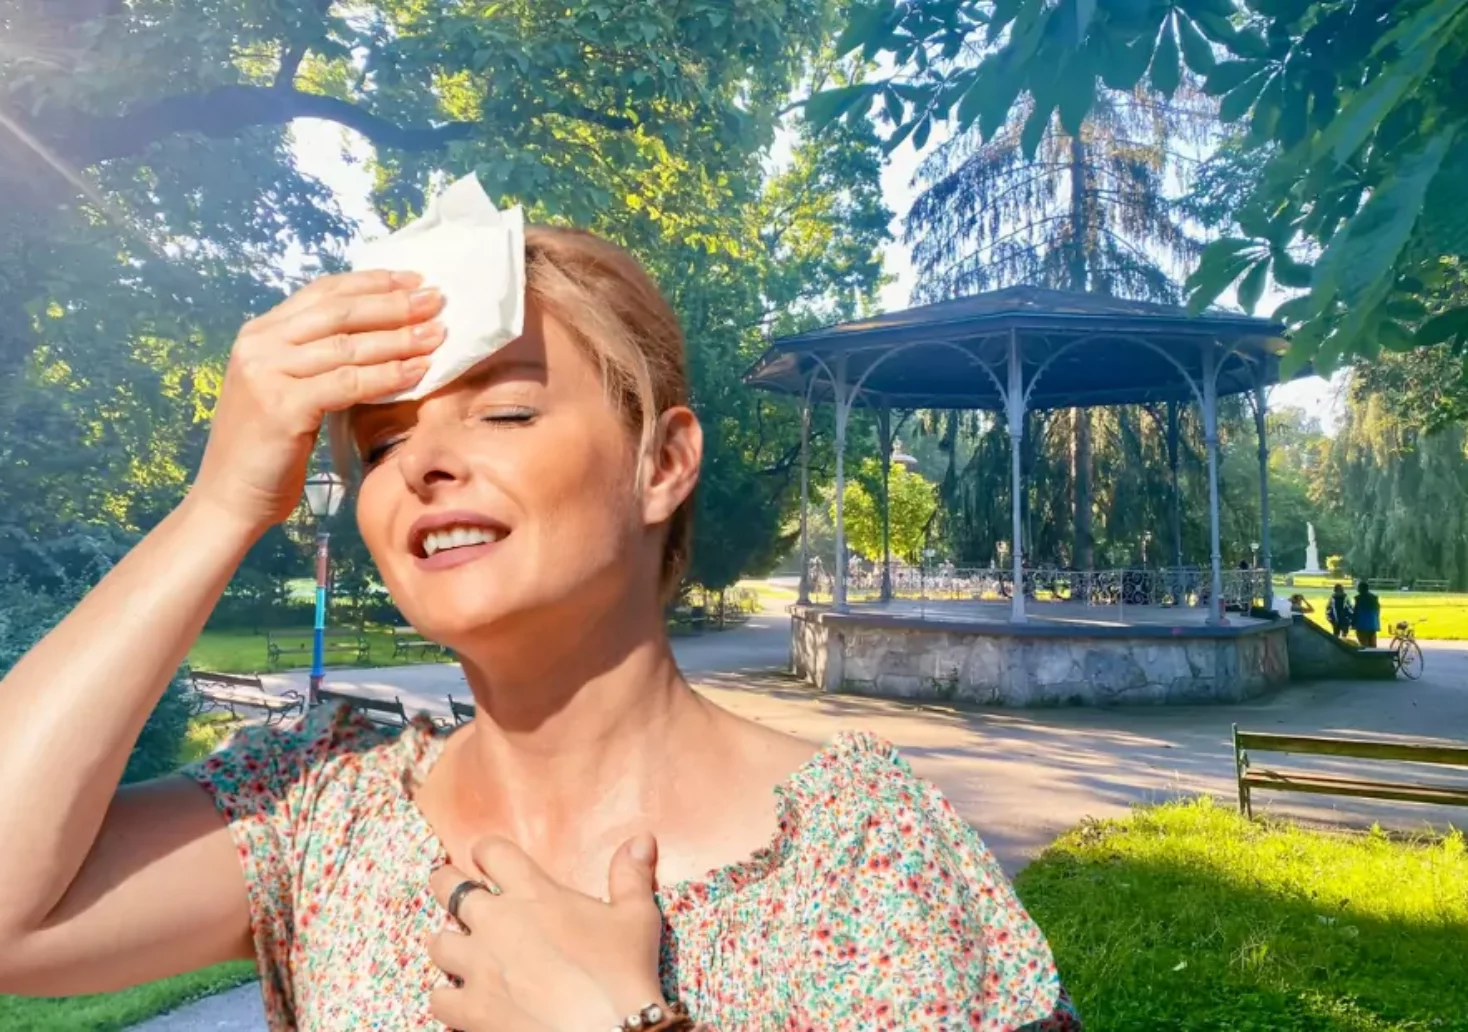 Bild auf 5min.at zeigt eine Frau, die sich ein Taschentuch an die Stirn hält, weil sie schwitzt.